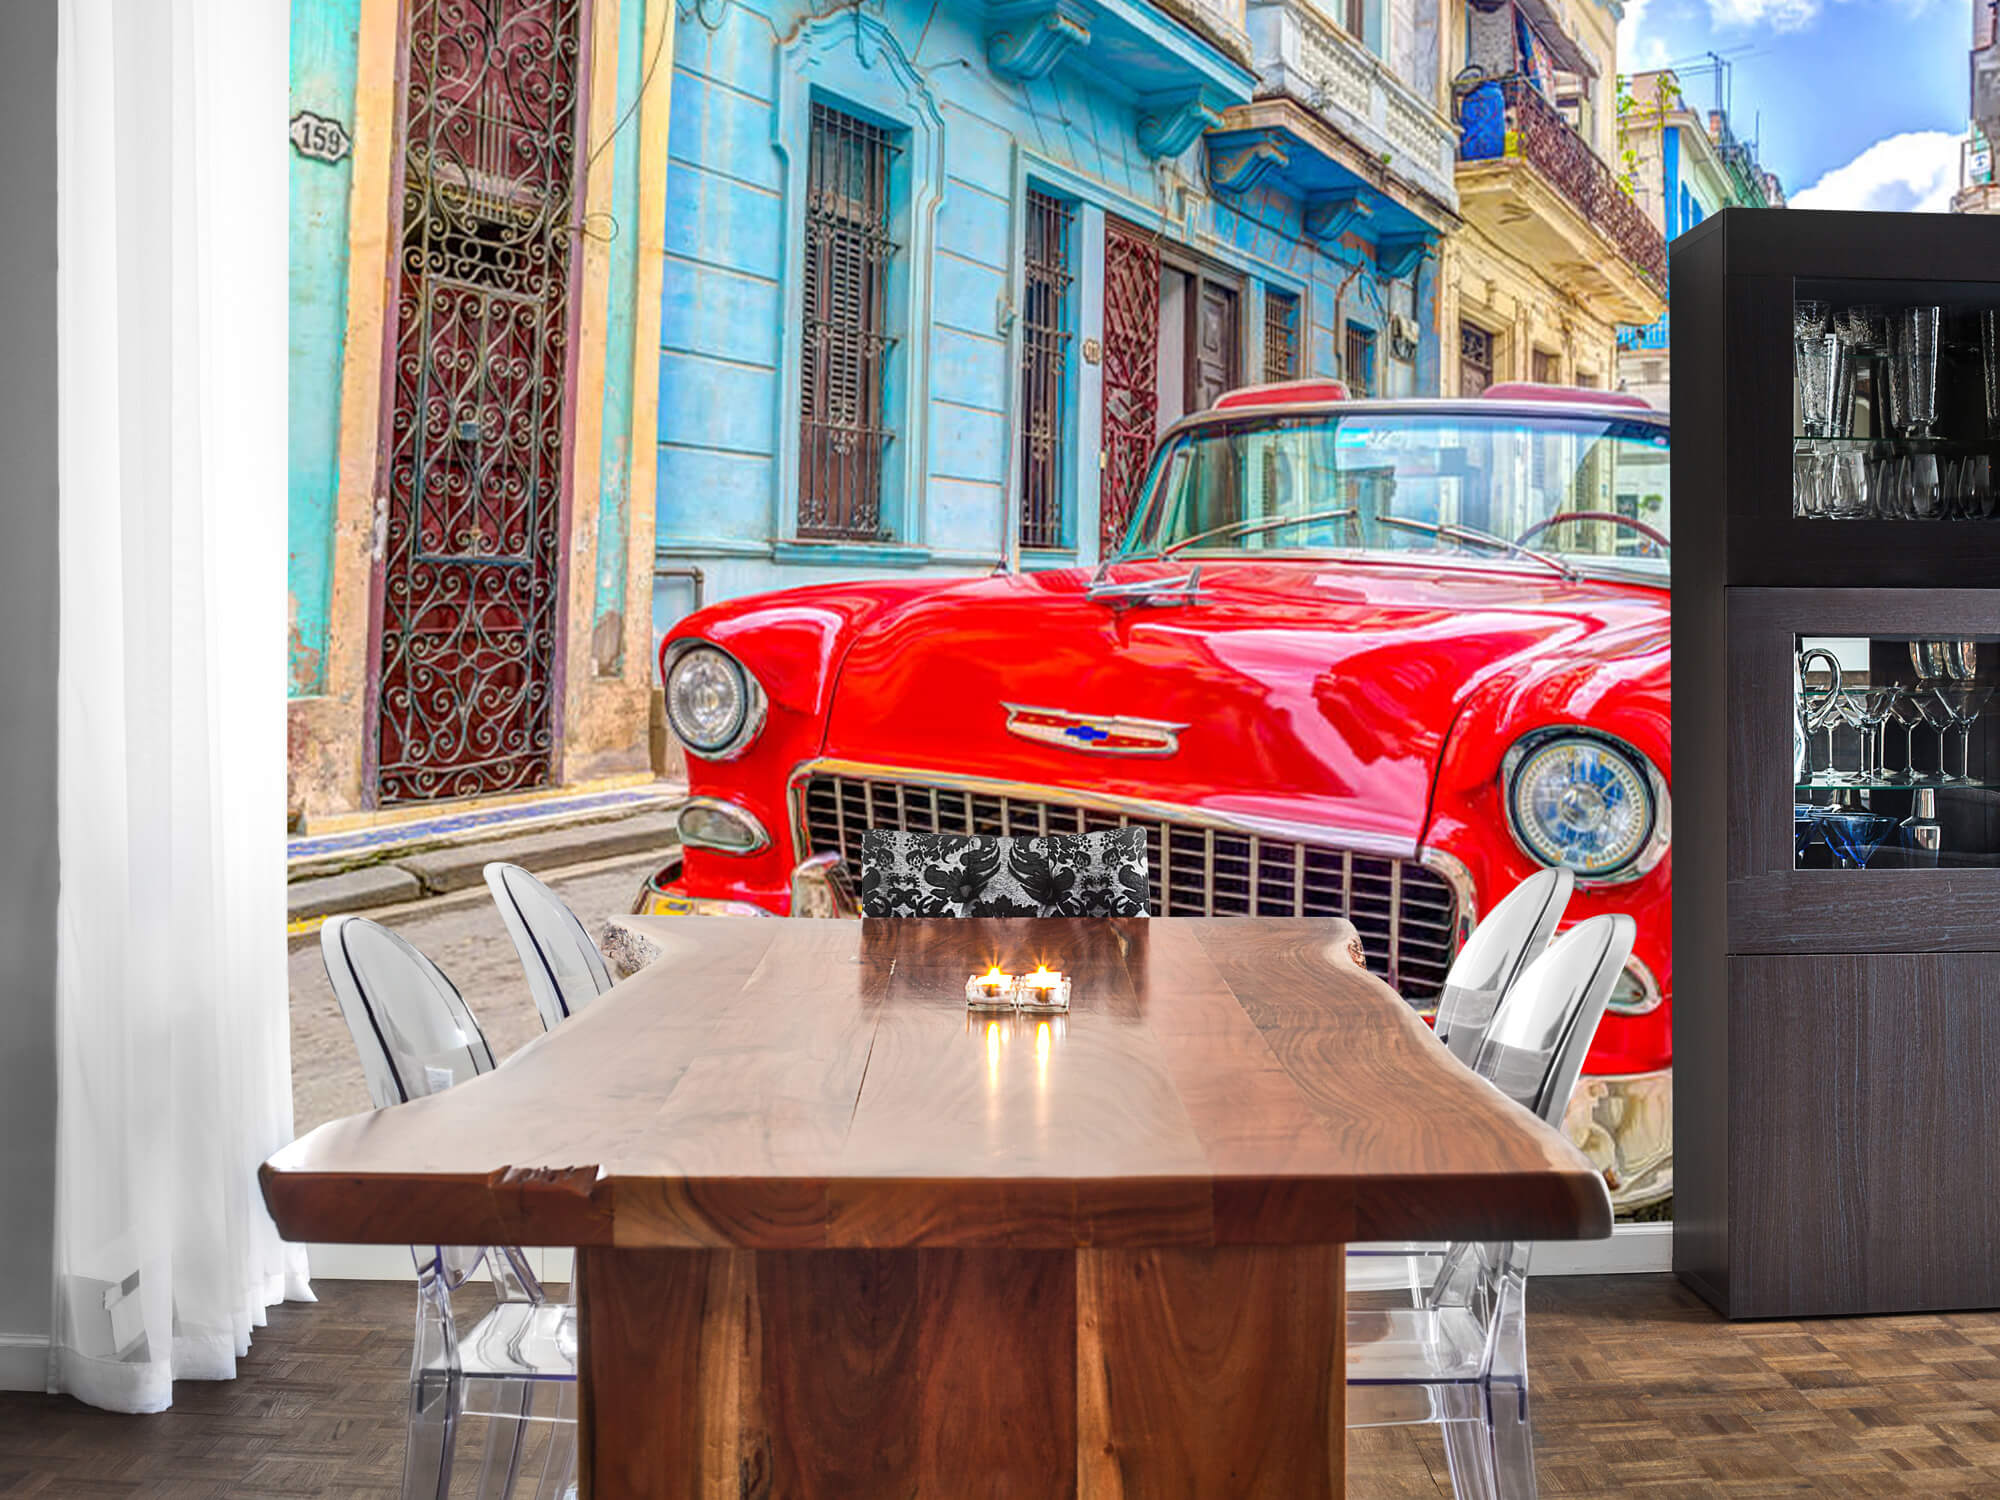  Samochód zabytkowy w Hawanie 7